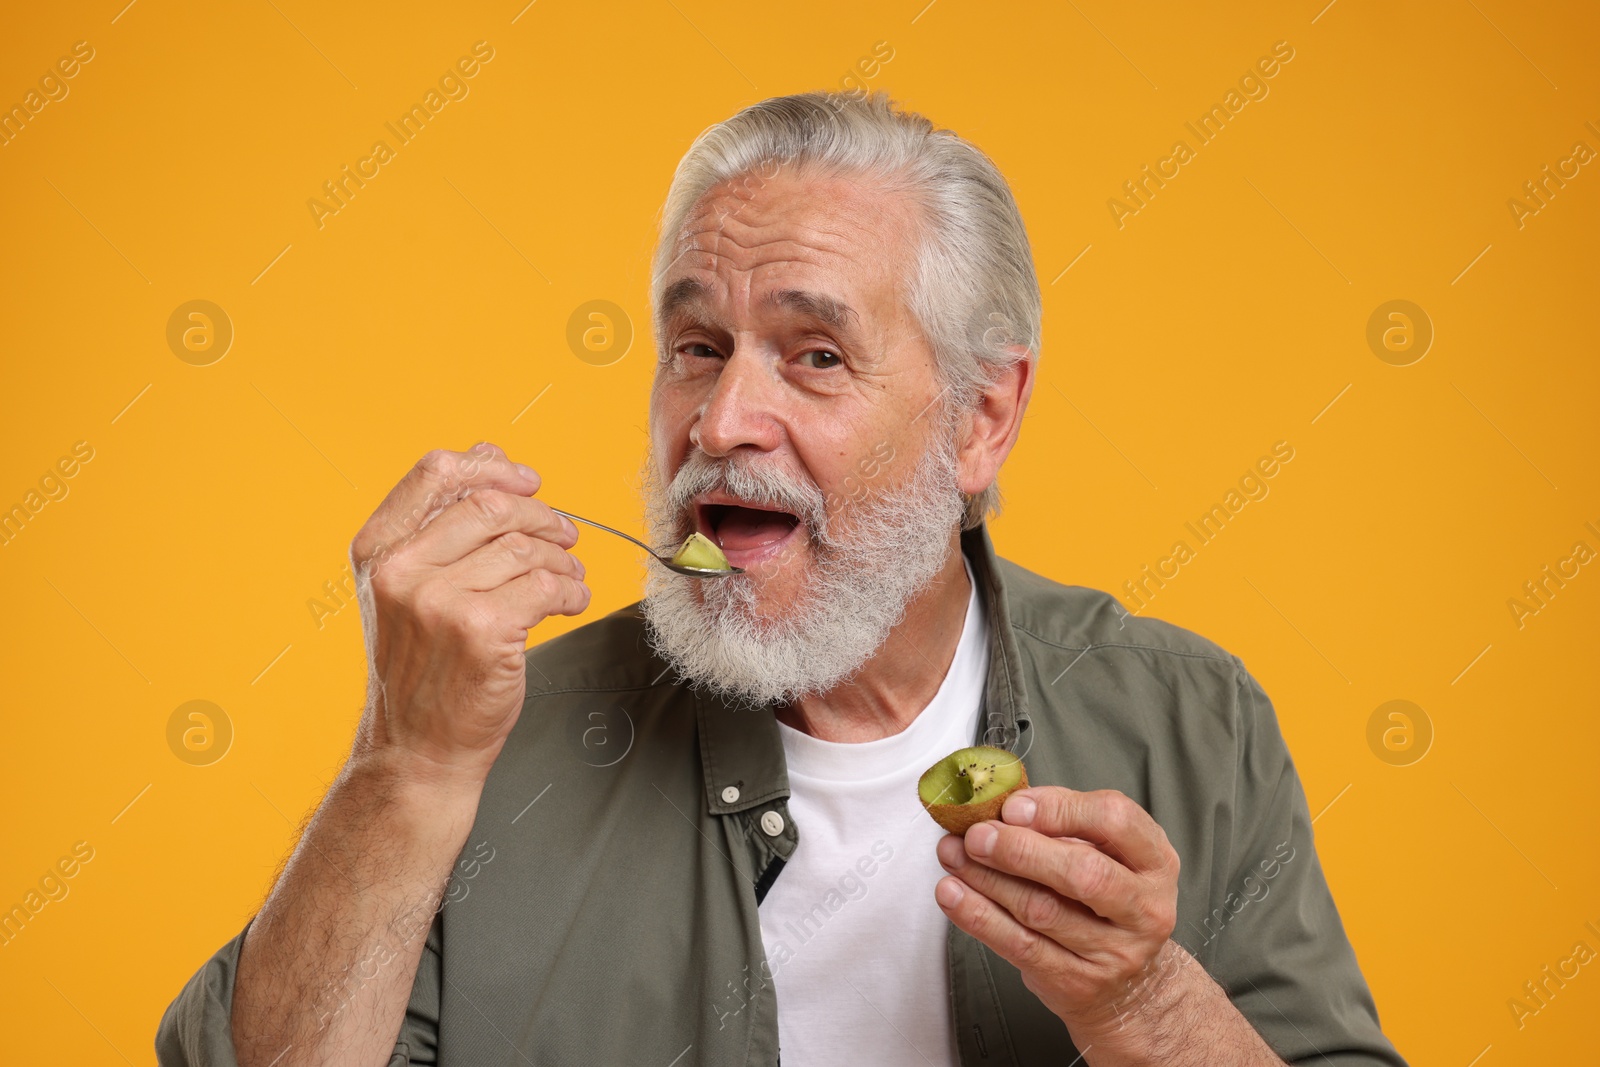 Photo of Senior man eating kiwi with spoon on yellow background